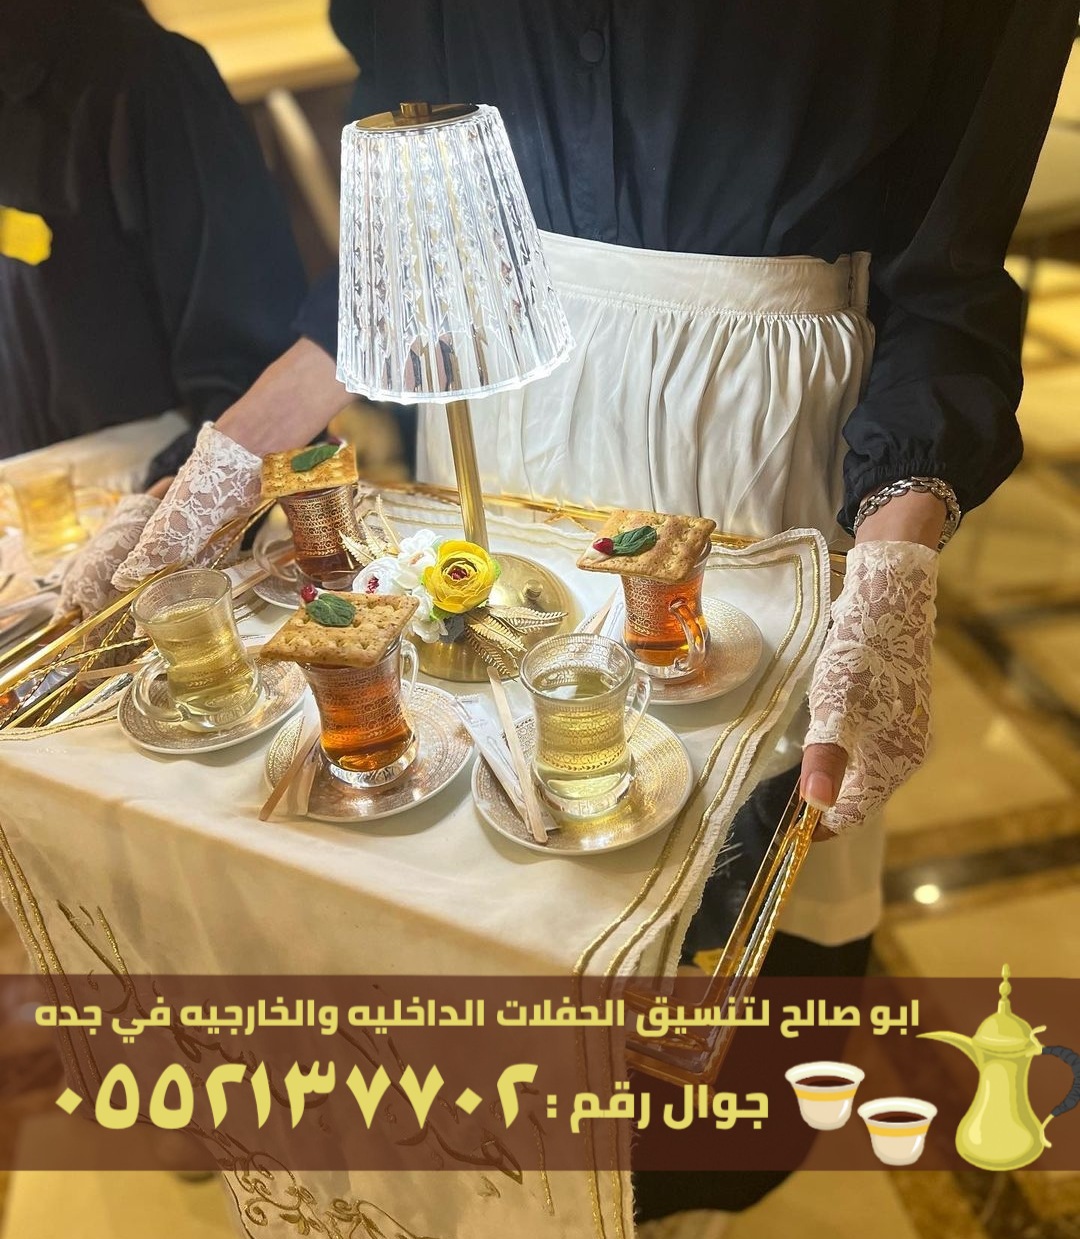 طاقم مباشرين قهوة في جدة, 0552137702 P_2601ynat32